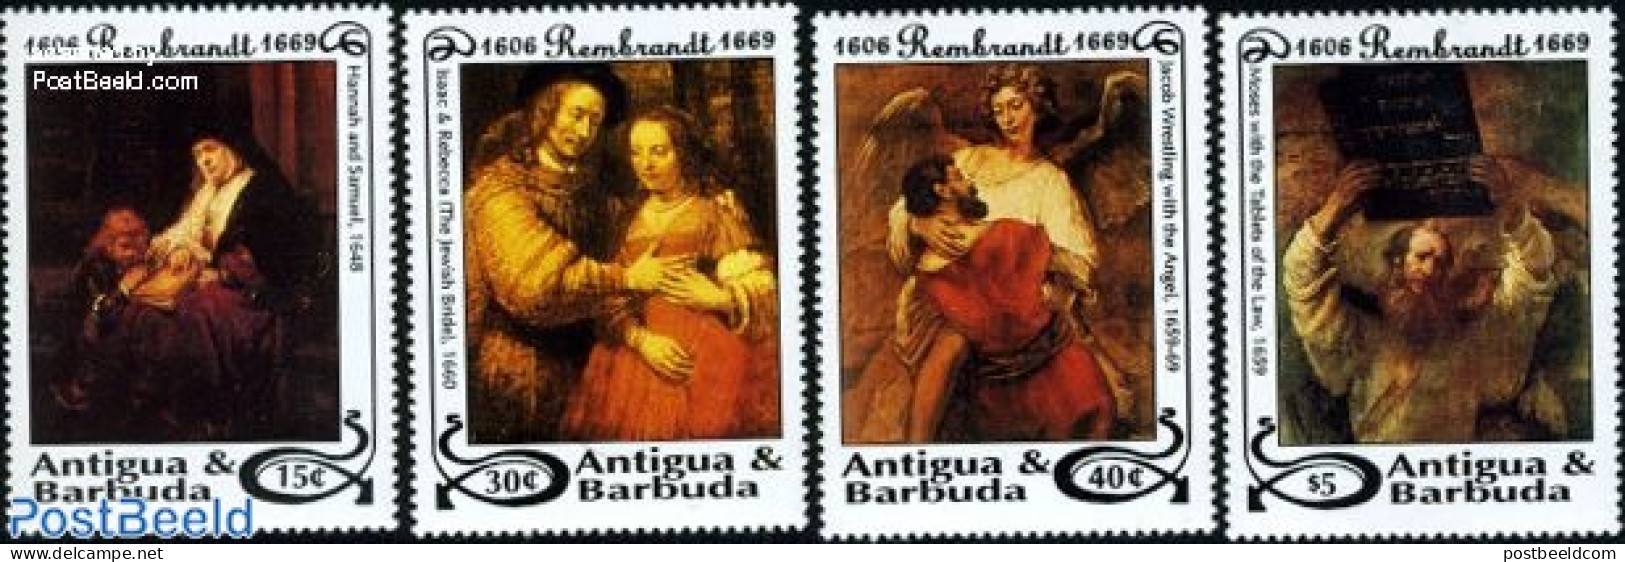 Antigua & Barbuda 1993 Rembrandt 4v, Mint NH, Art - Paintings - Rembrandt - Antigua Und Barbuda (1981-...)